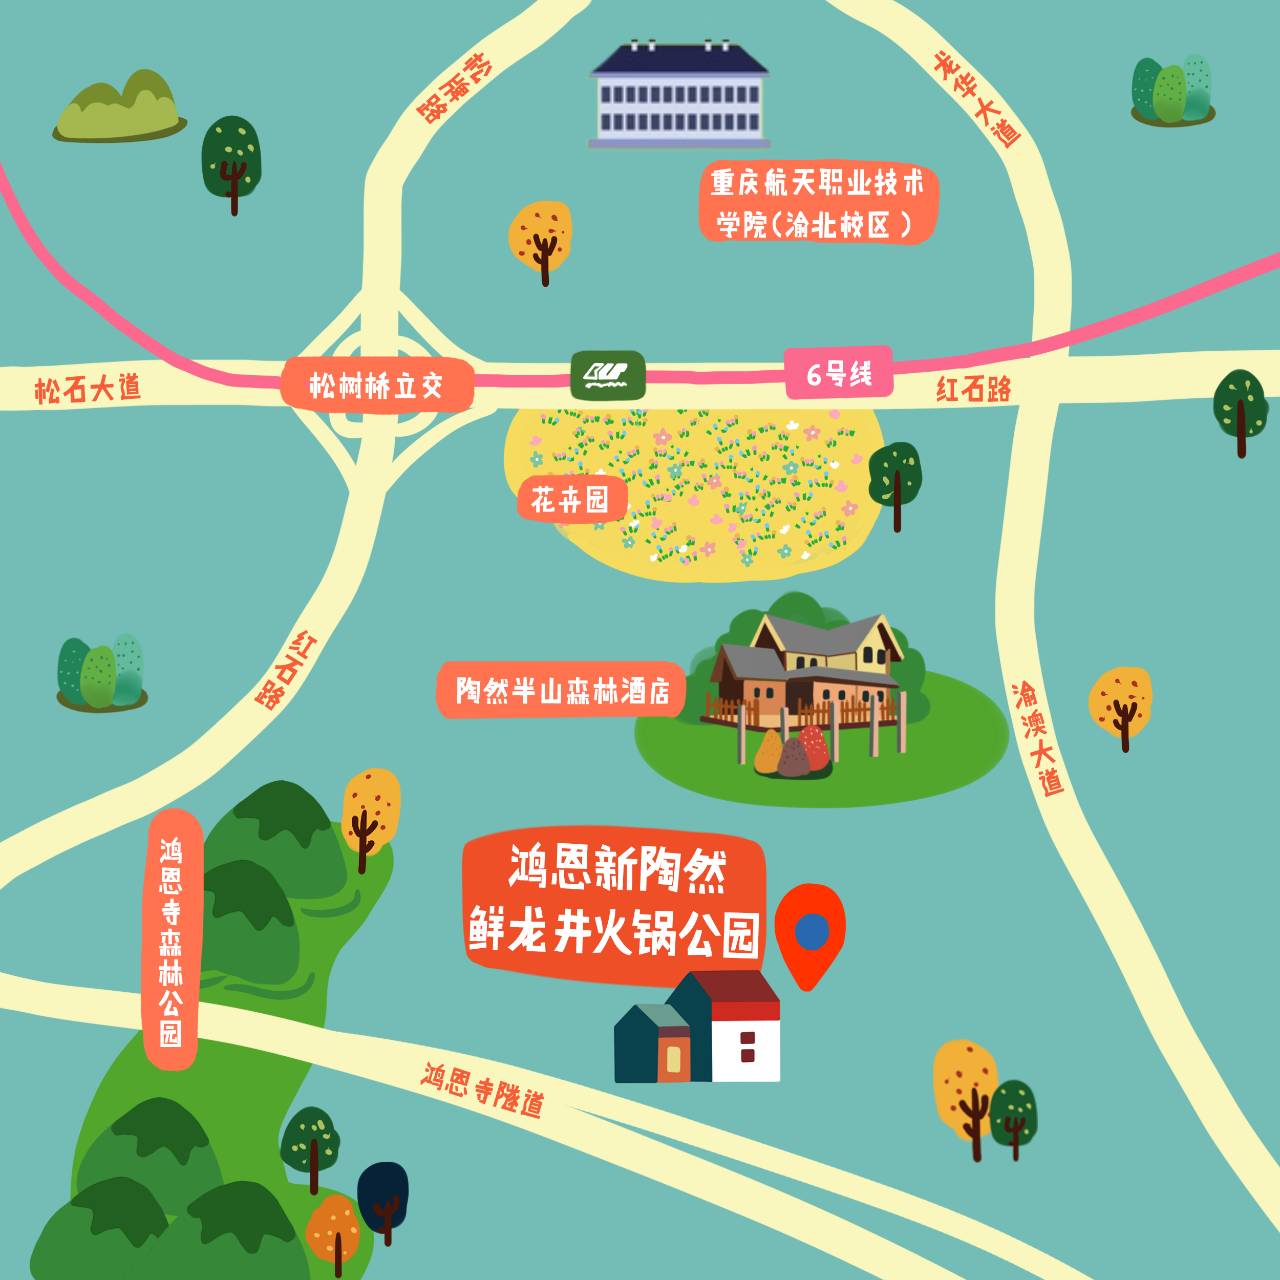 鸿恩寺公园地图图片